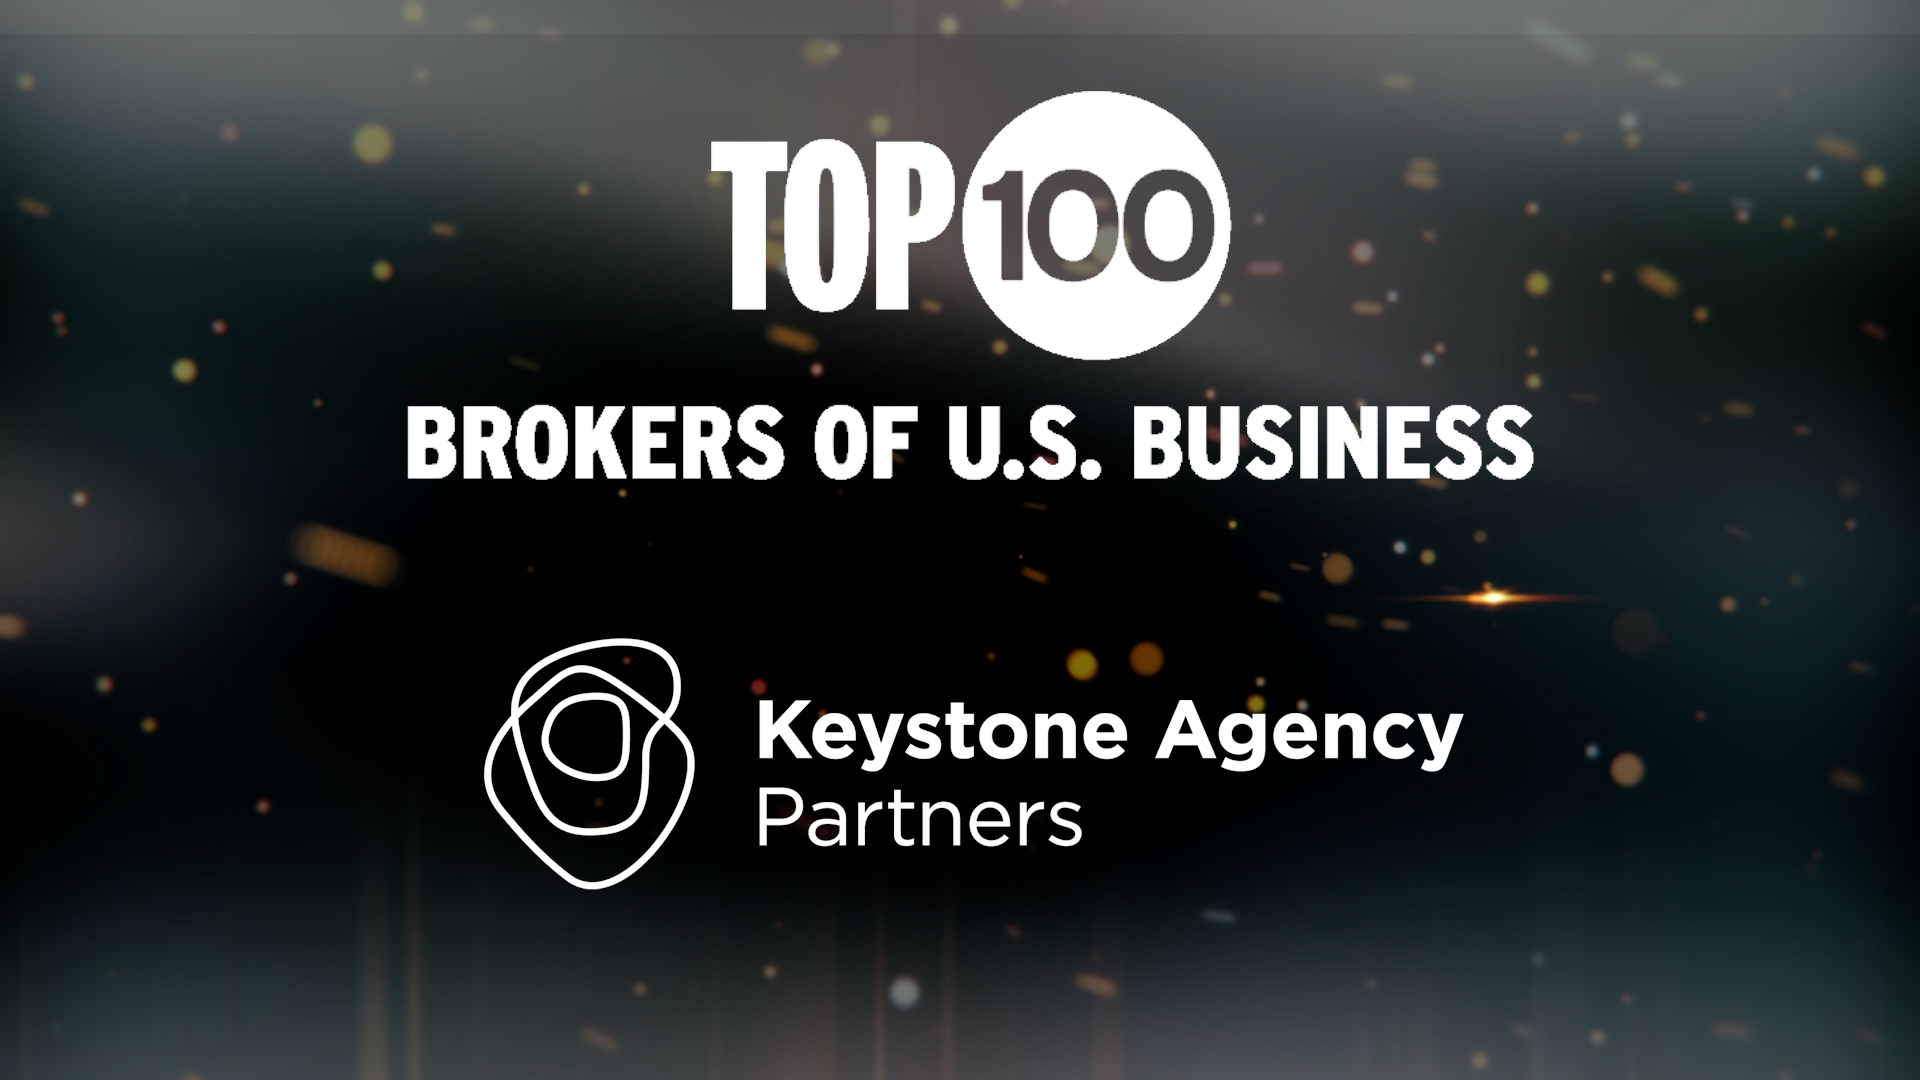 Keystone Agency Partners Secures Spot in Top 50 on Prestigious Industry List